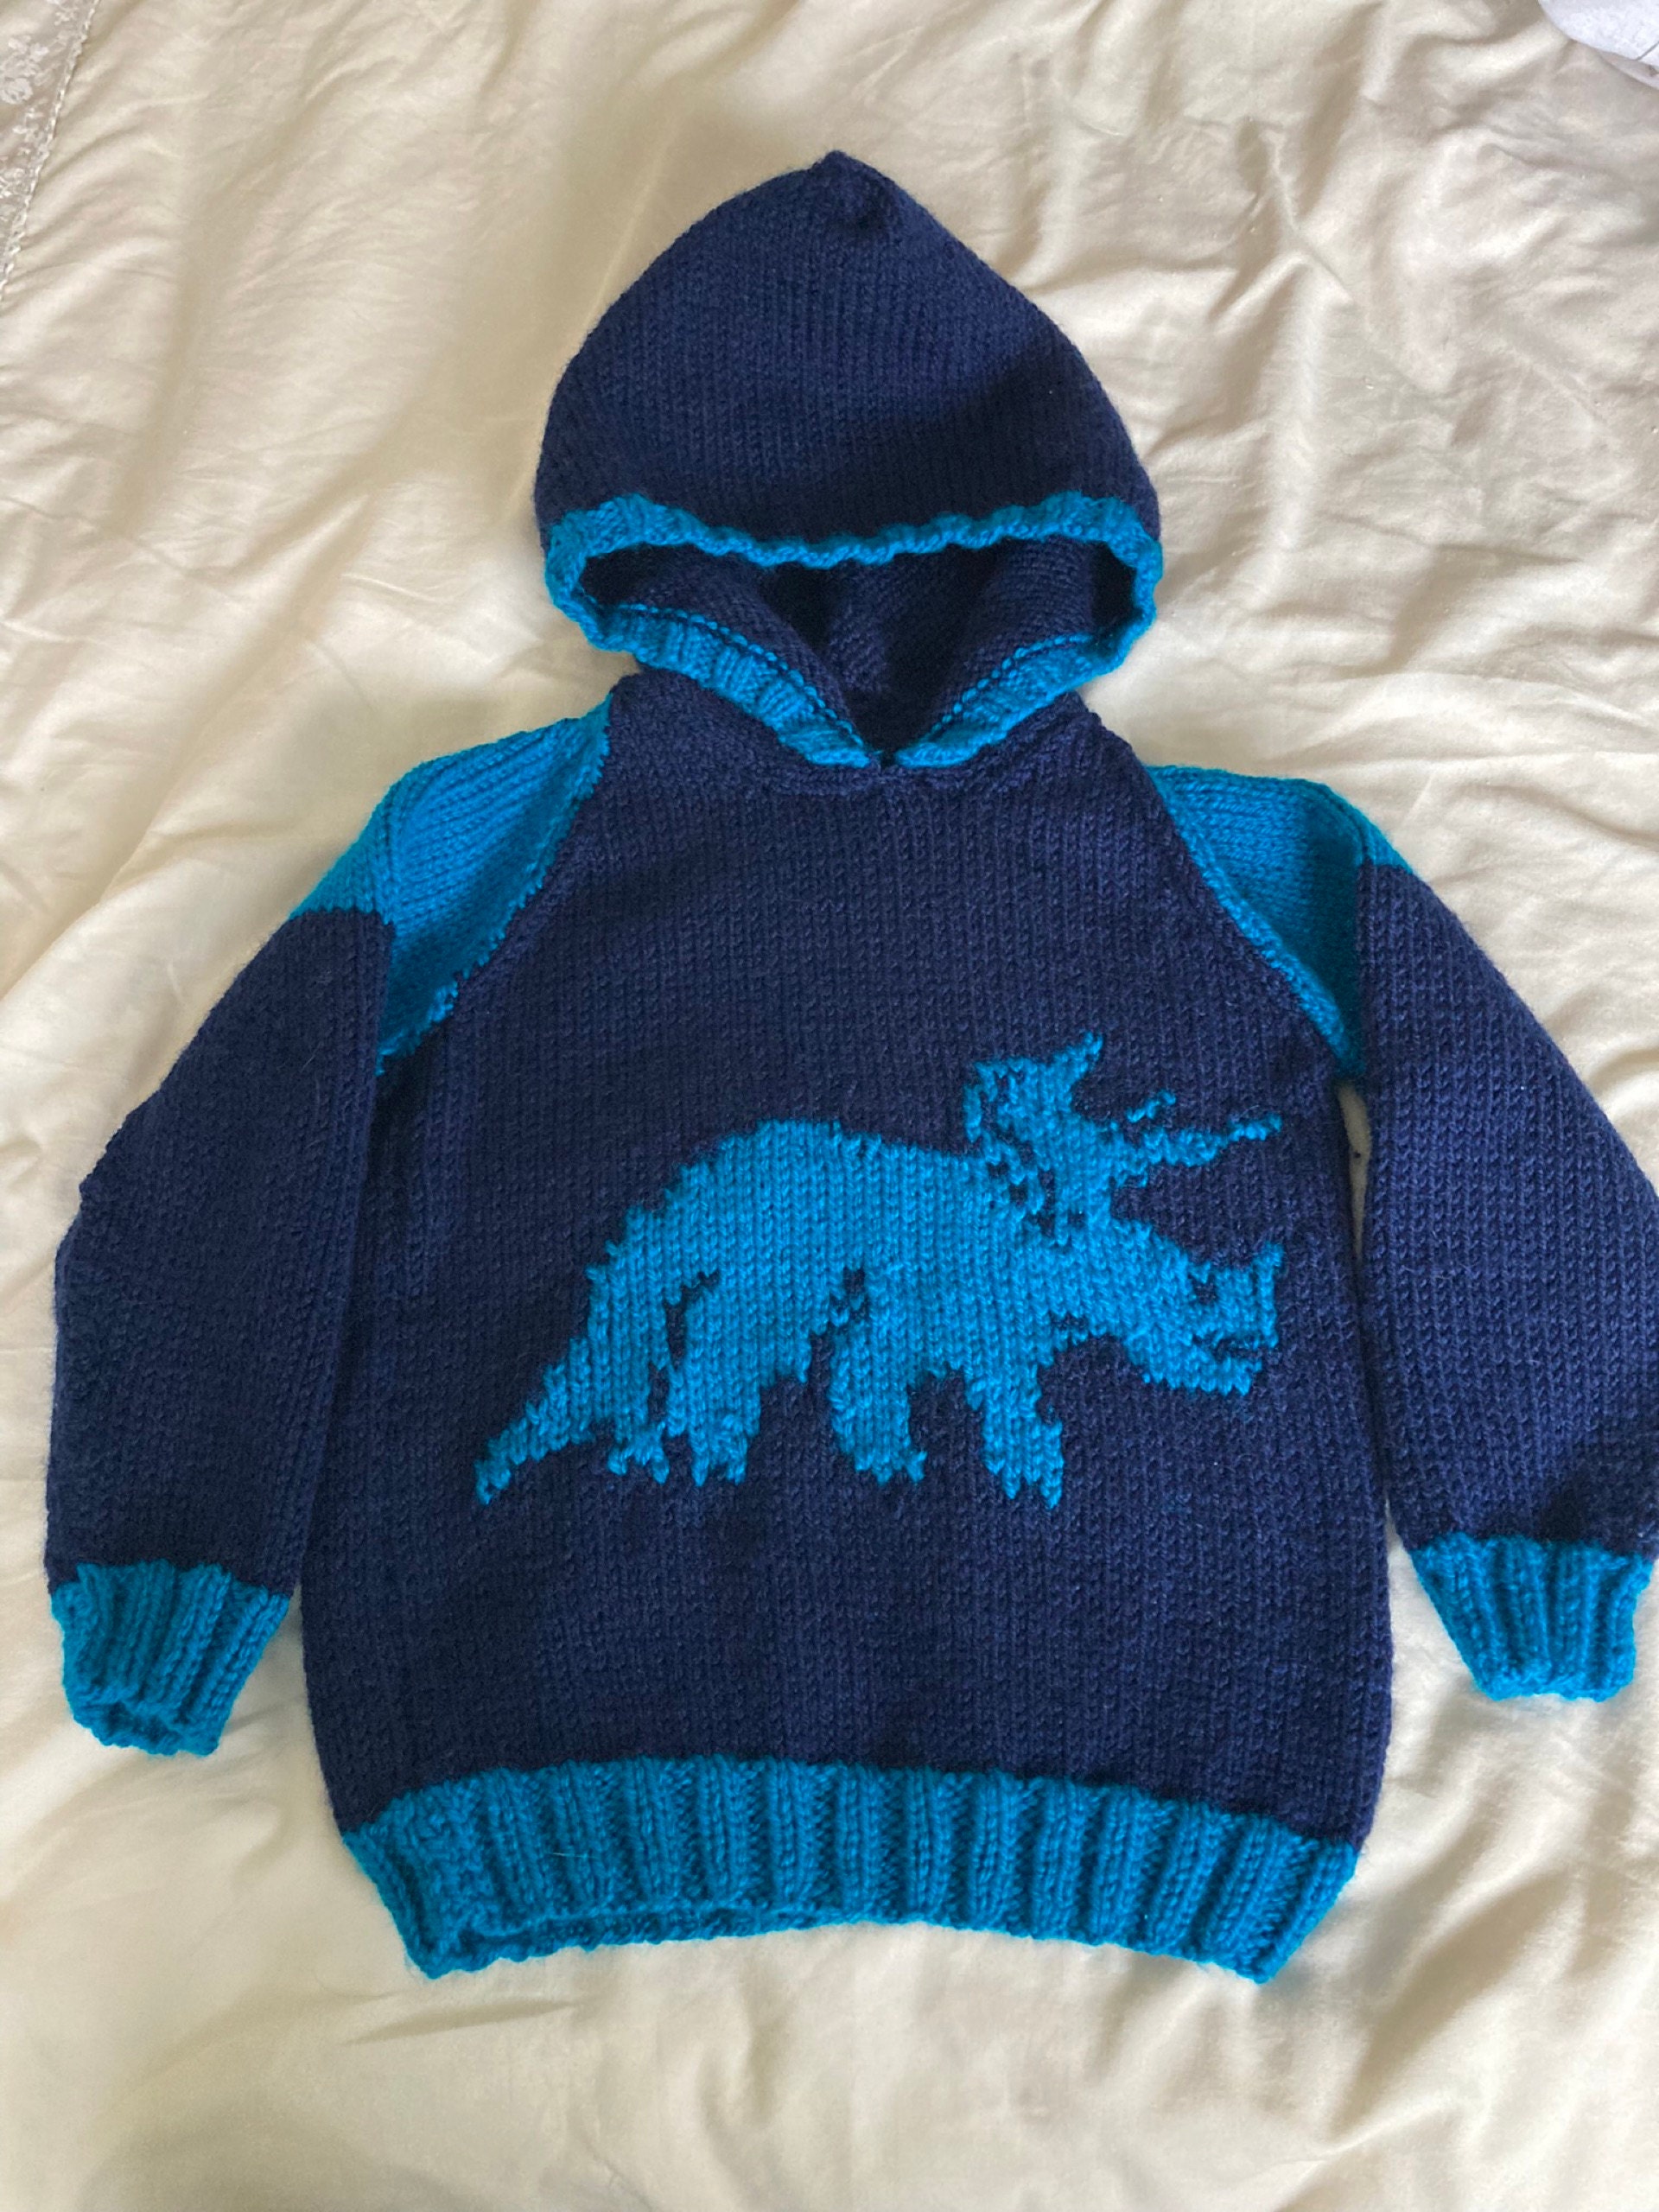 Knitting pattern - boys and girls dinosaur hoodie, Pdf download ...